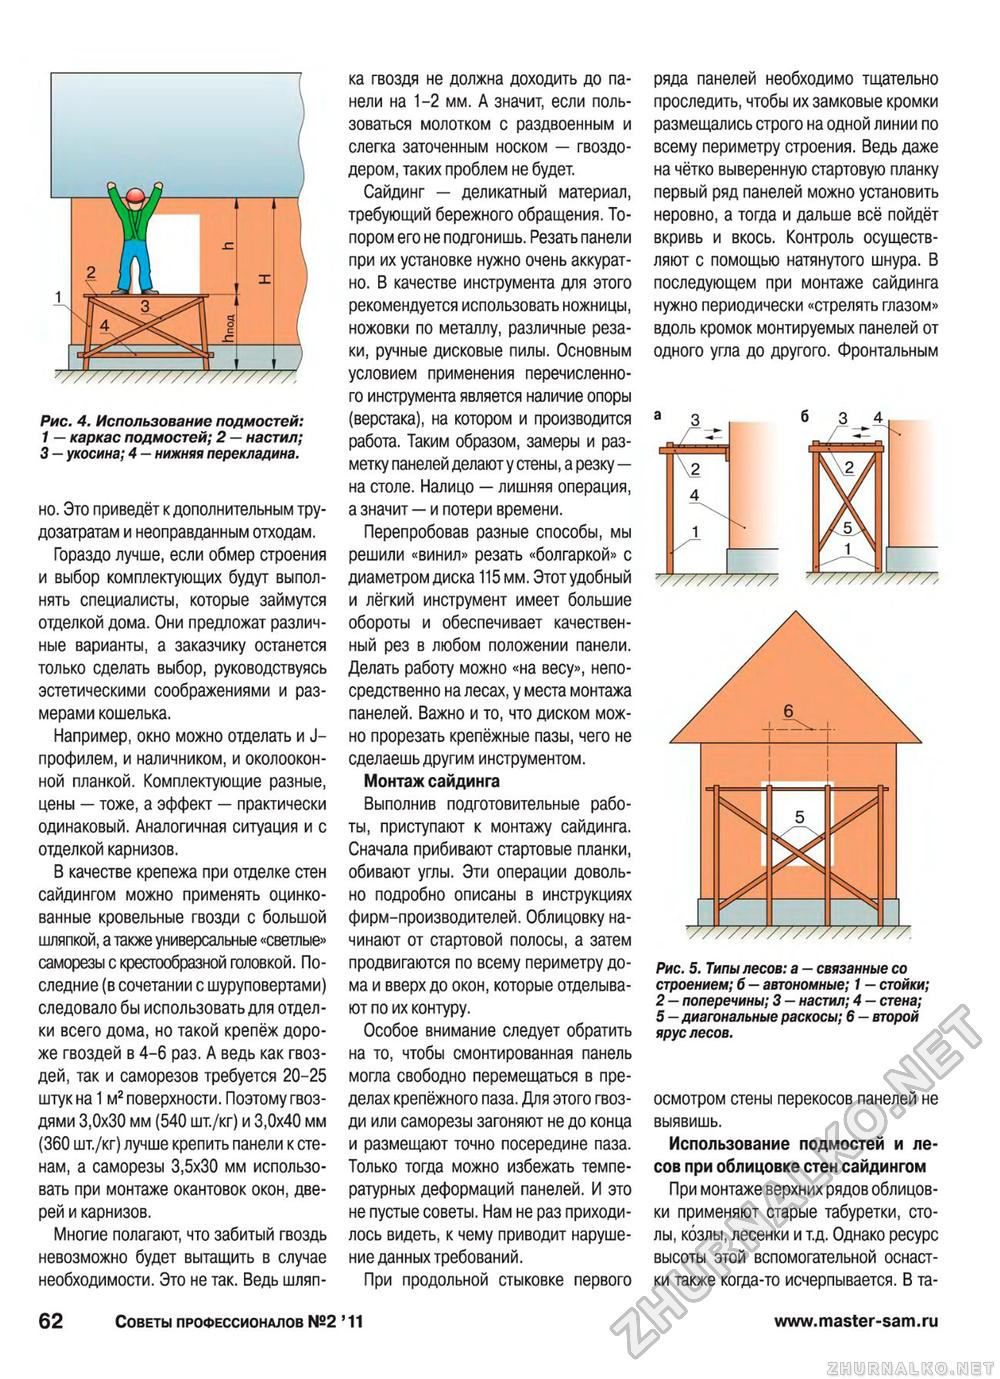 Советы профессионалов 2011-02, страница 62